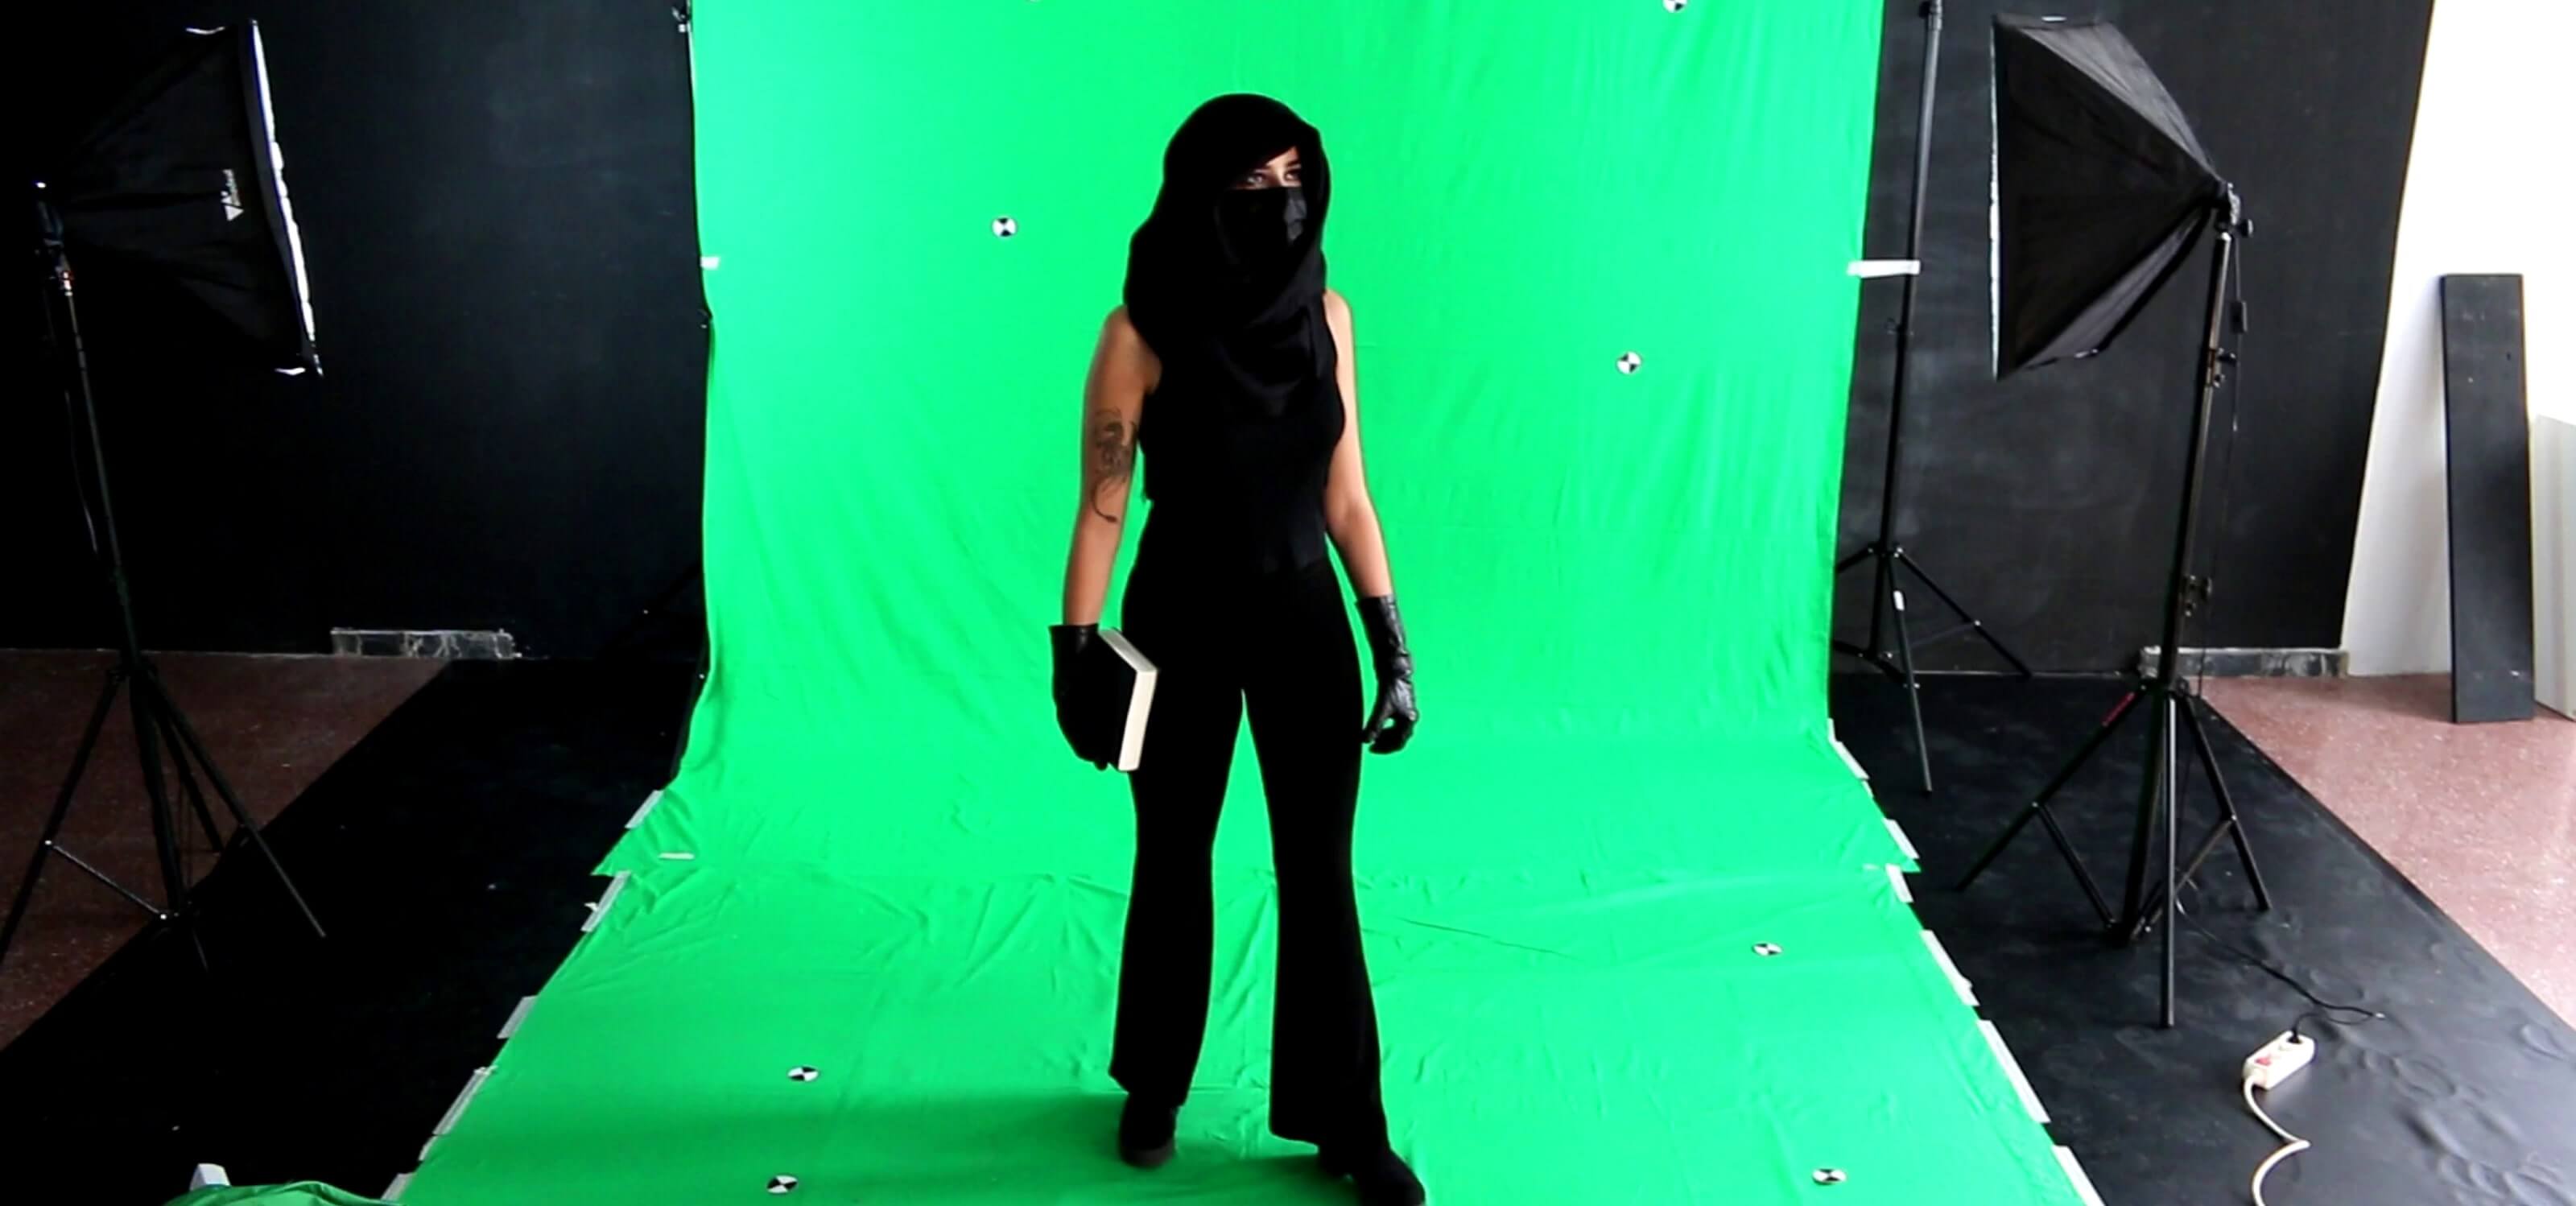 Una estudiante está disfrazada frente a una pantalla verde para efectos especiales.